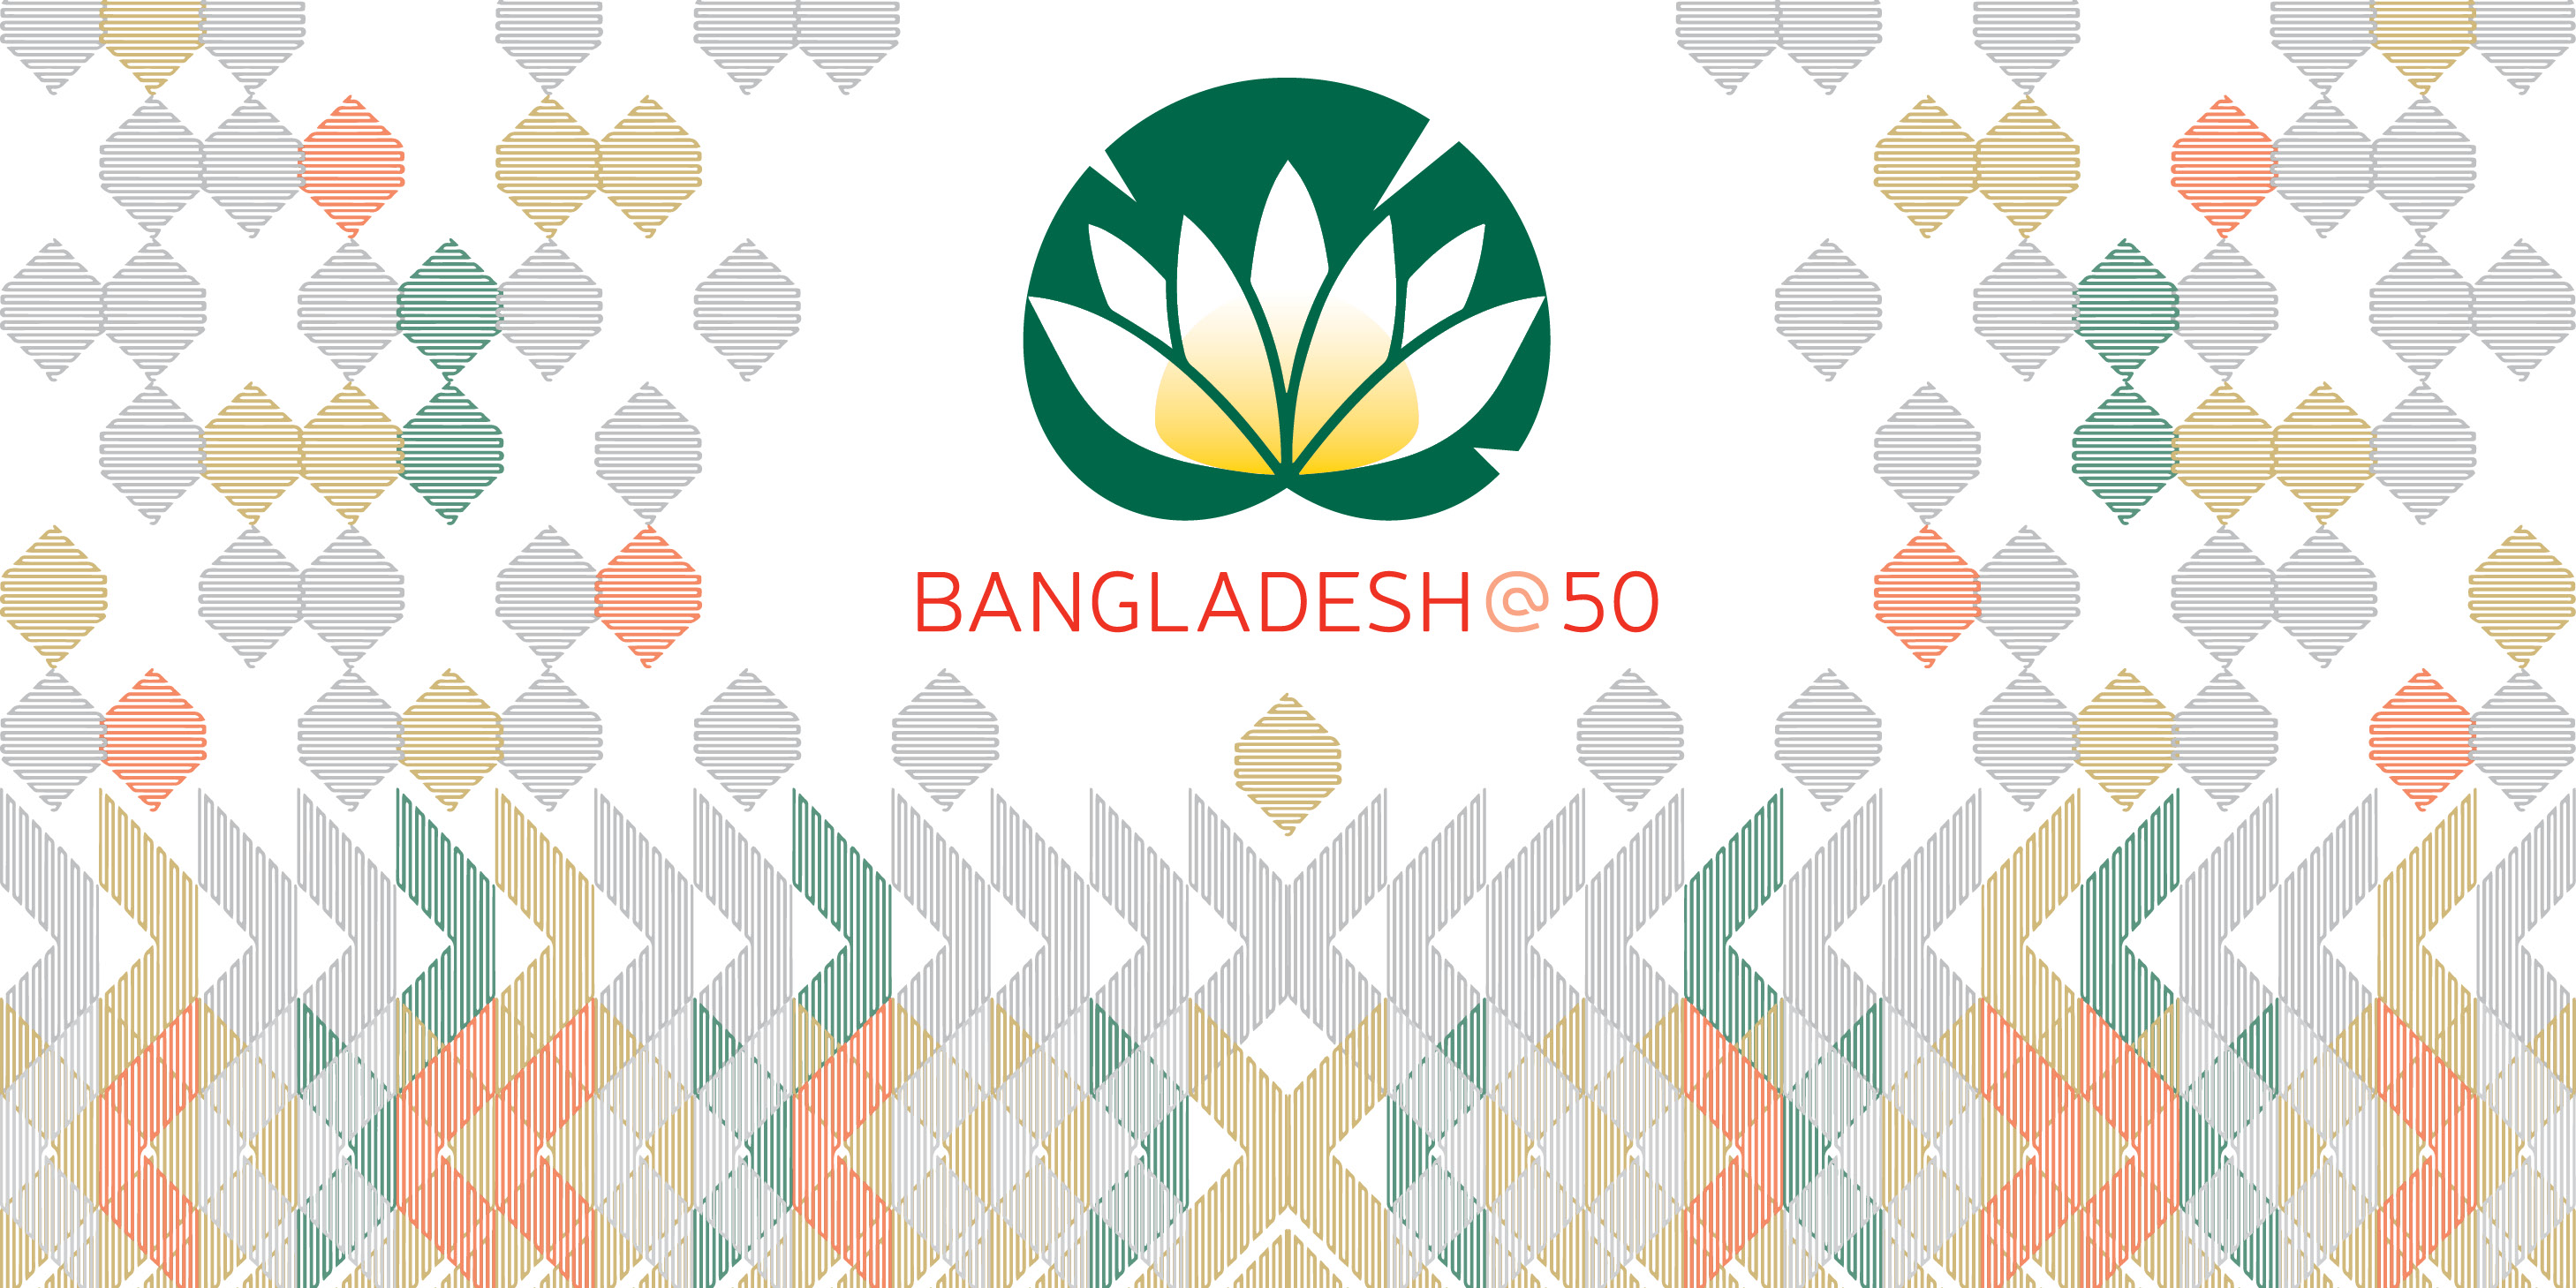 Bangladesh_1400x700_revised